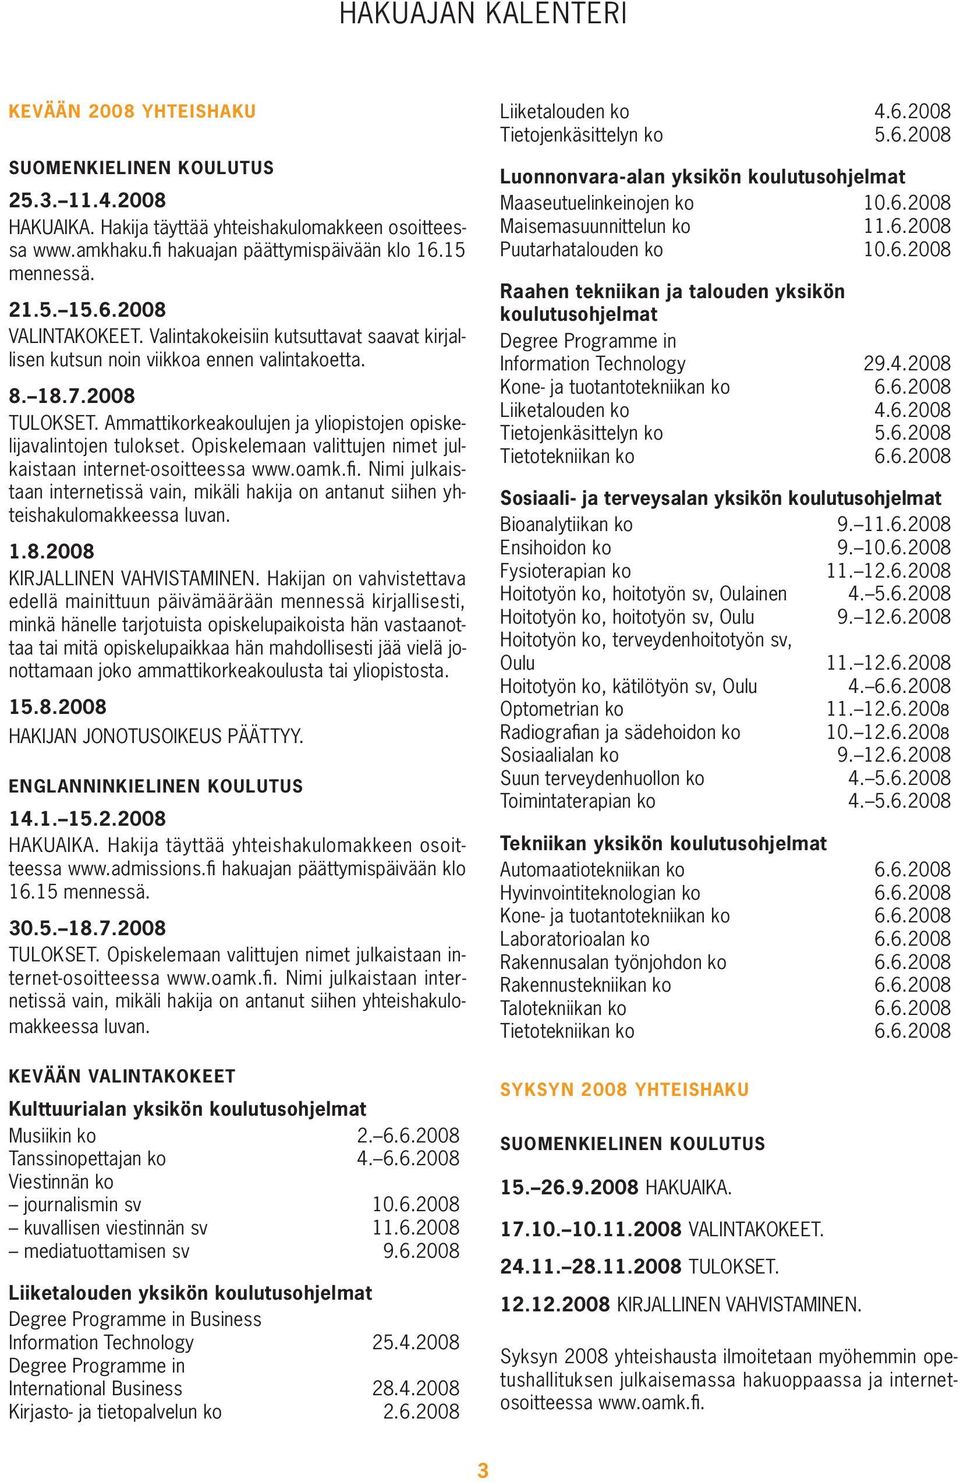 Ammattikorkeakoulujen ja yliopistojen opiskelijavalintojen tulokset. Opiskelemaan valittujen nimet julkaistaan internet-osoitteessa www.oamk.fi.